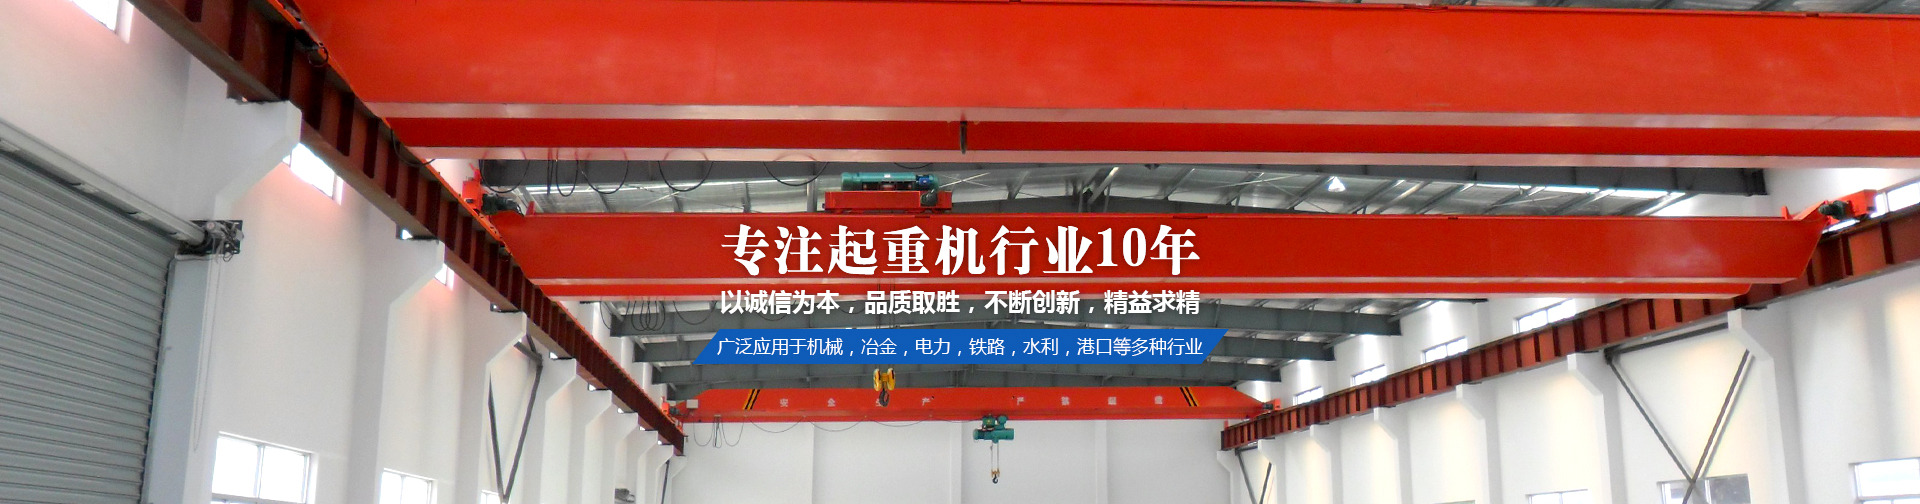 广东台起重工起重机设备有限公司